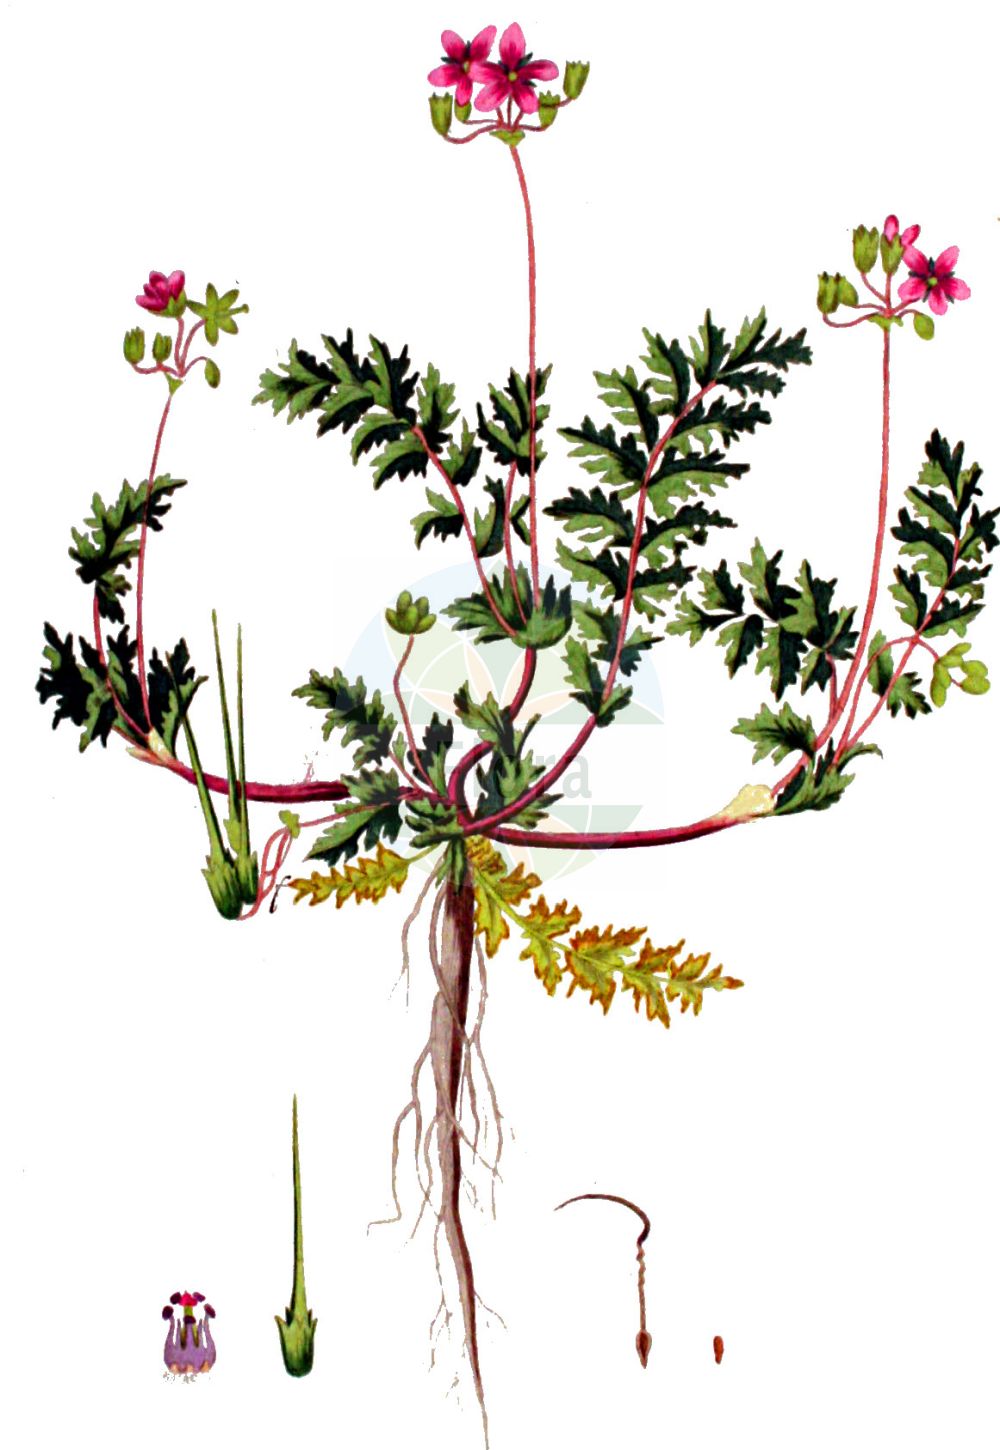 Historische Abbildung von Erodium cicutarium (Gewöhnlicher Reiherschnabel - Common Stork's-bill). Das Bild zeigt Blatt, Bluete, Frucht und Same. ---- Historical Drawing of Erodium cicutarium (Gewöhnlicher Reiherschnabel - Common Stork's-bill). The image is showing leaf, flower, fruit and seed.(Erodium cicutarium,Gewöhnlicher Reiherschnabel,Common Stork's-bill,Erodium aethiopicum,Erodium arenarium,Erodium ballii,Erodium bipinnatum,Erodium chaerophyllum,Erodium cicutarium,Erodium danicum,Erodium glutinosum,Erodium jacquinianum,Erodium marcuccii,Erodium microphyllum,Erodium pilosum,Erodium pimpinellifolium,Erodium praecox,Erodium primulaceum,Erodium salzmannii,Erodium staphylinum,Erodium sublyratum,Erodium tenuisectum,Erodium tocranum,Geranium aethiopicum,Geranium cicutarium,Geranium pilosum,Geranium praecox,Gewoehnlicher Reiherschnabel,Common Stork's-bill,Clocks,Common Crowfoot,Filaree,Hemlock Storksbill,Redstem Filaree,Redstem Storksbill,Erodium,Reiherschnabel,Storksbill,Geraniaceae,Storchschnabelgewächse,Geranium family,Blatt,Bluete,Frucht,Same,leaf,flower,fruit,seed,Kops (1800-1934))